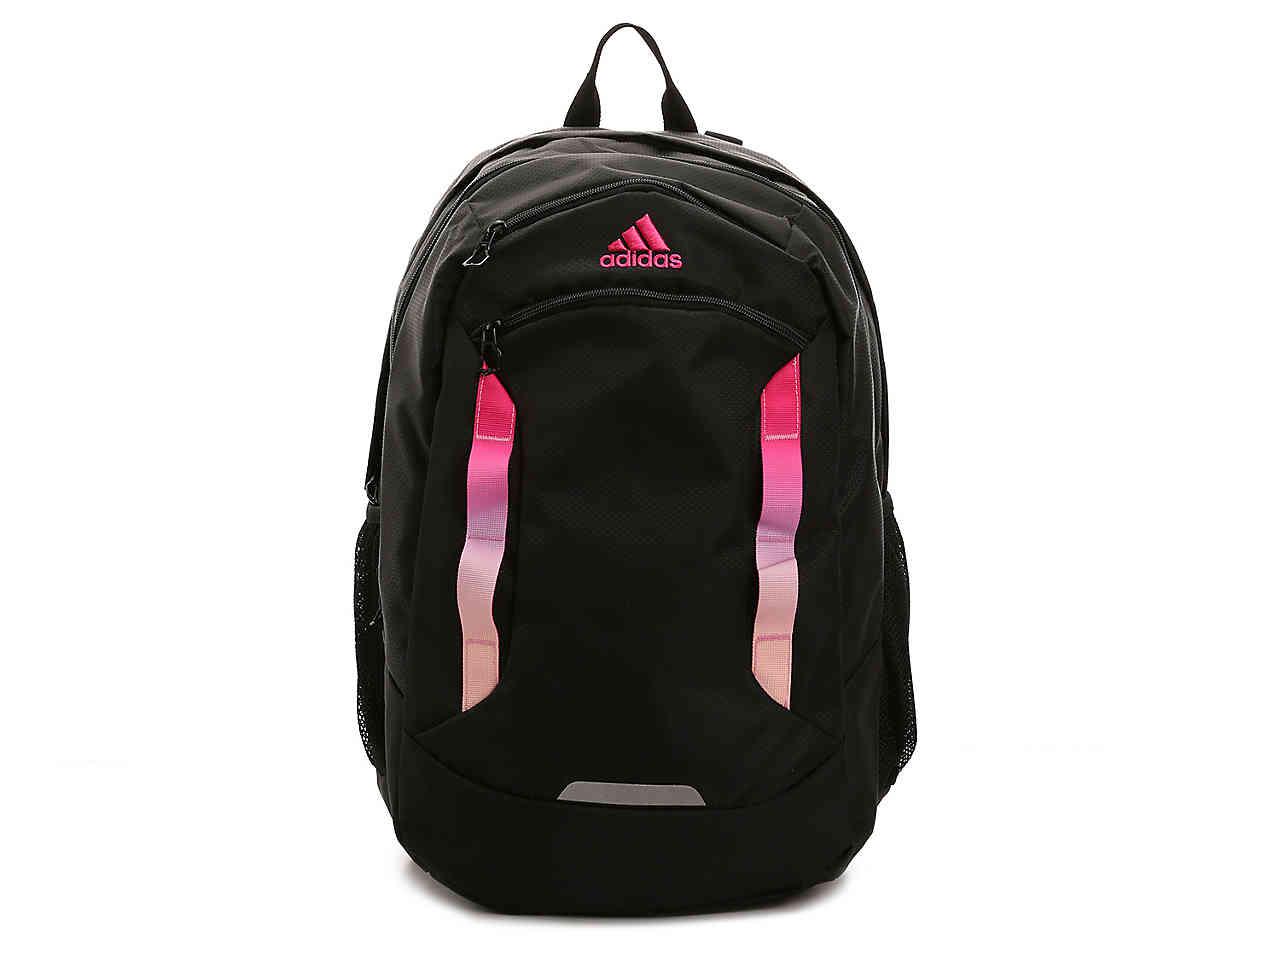 adidas excel iv backpack black